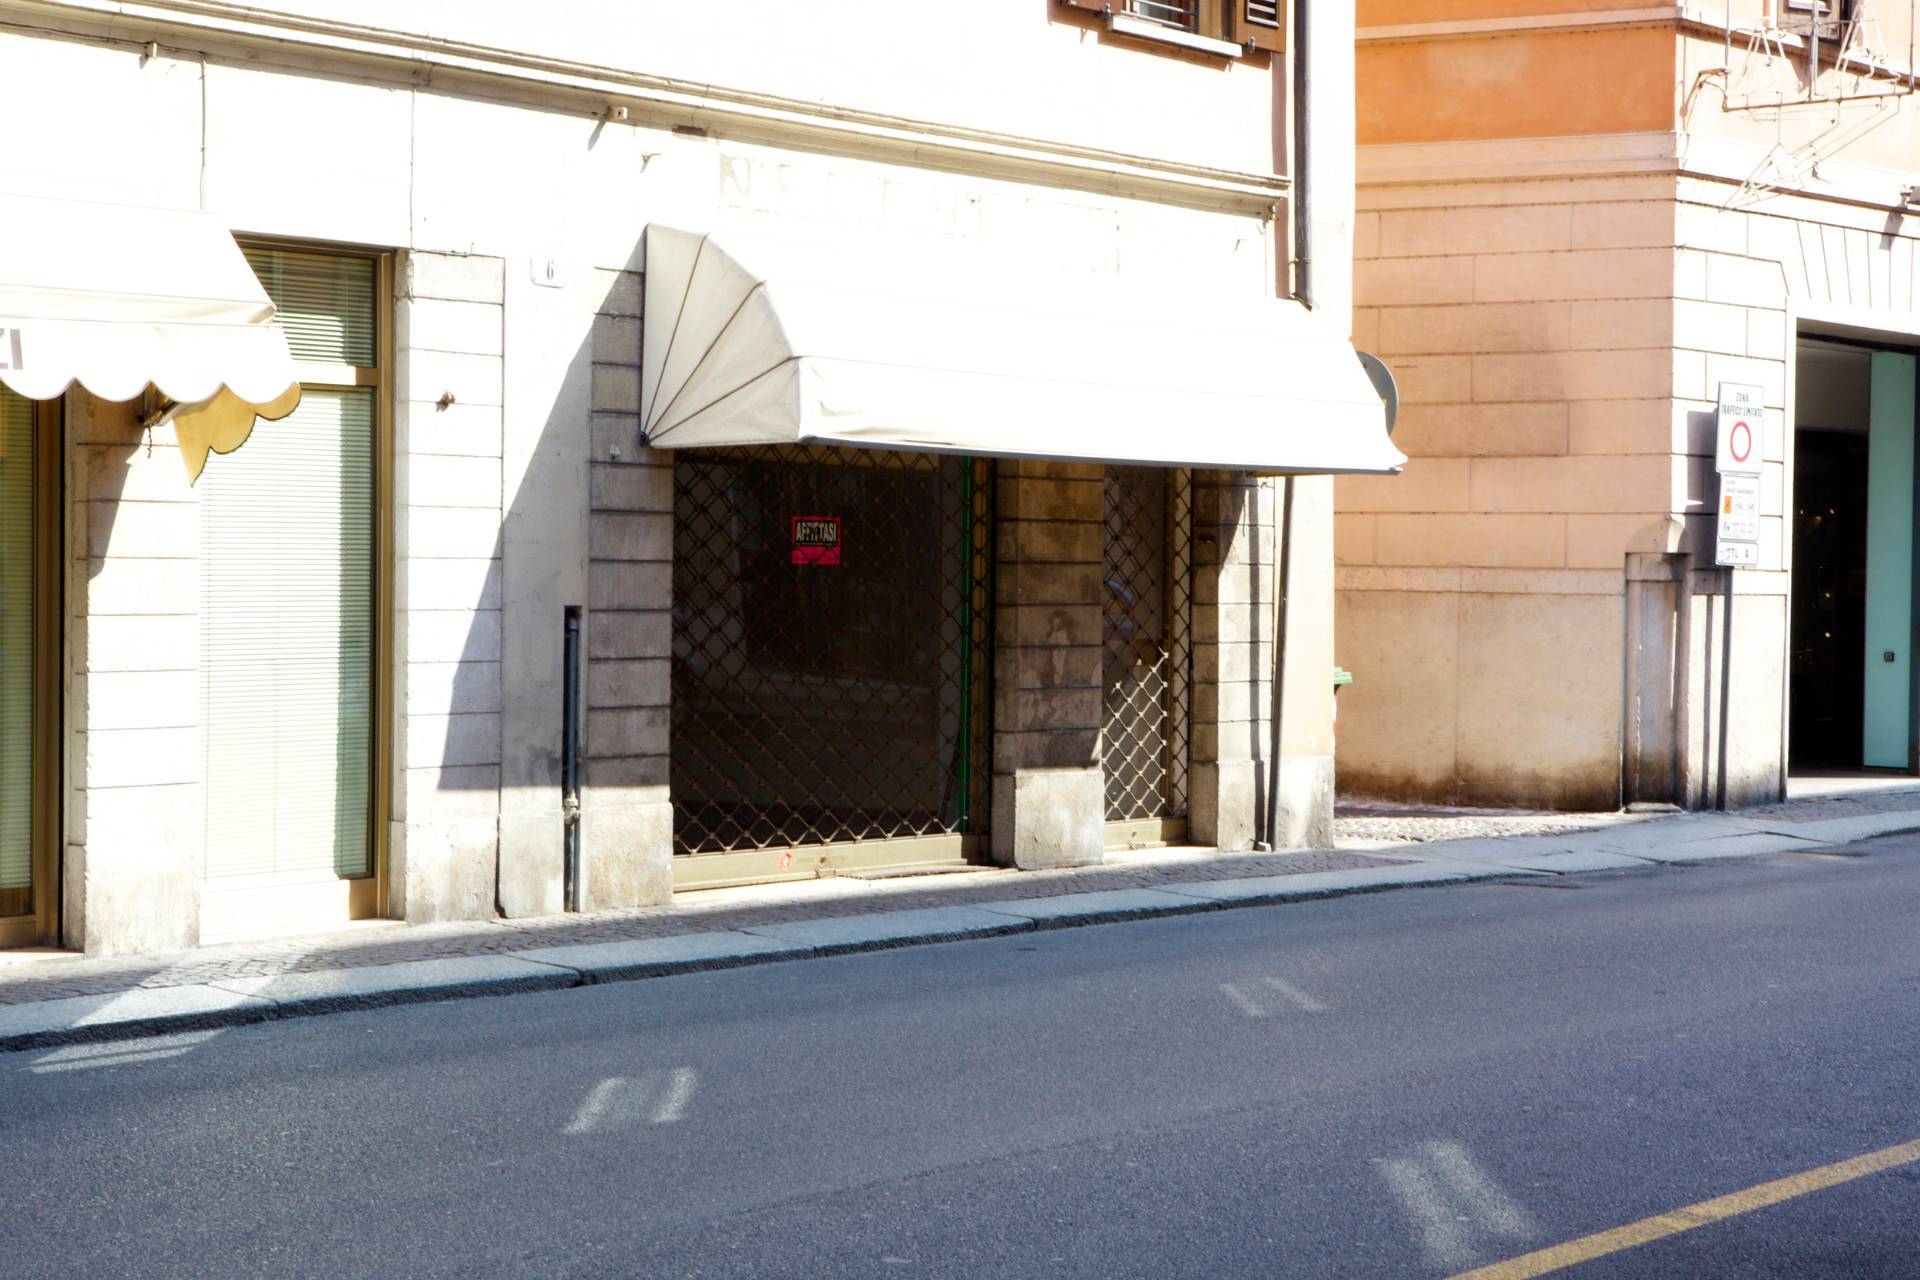 Ufficio / Studio in affitto a Mantova, 9999 locali, zona Località: Centrostorico, prezzo € 800 | CambioCasa.it